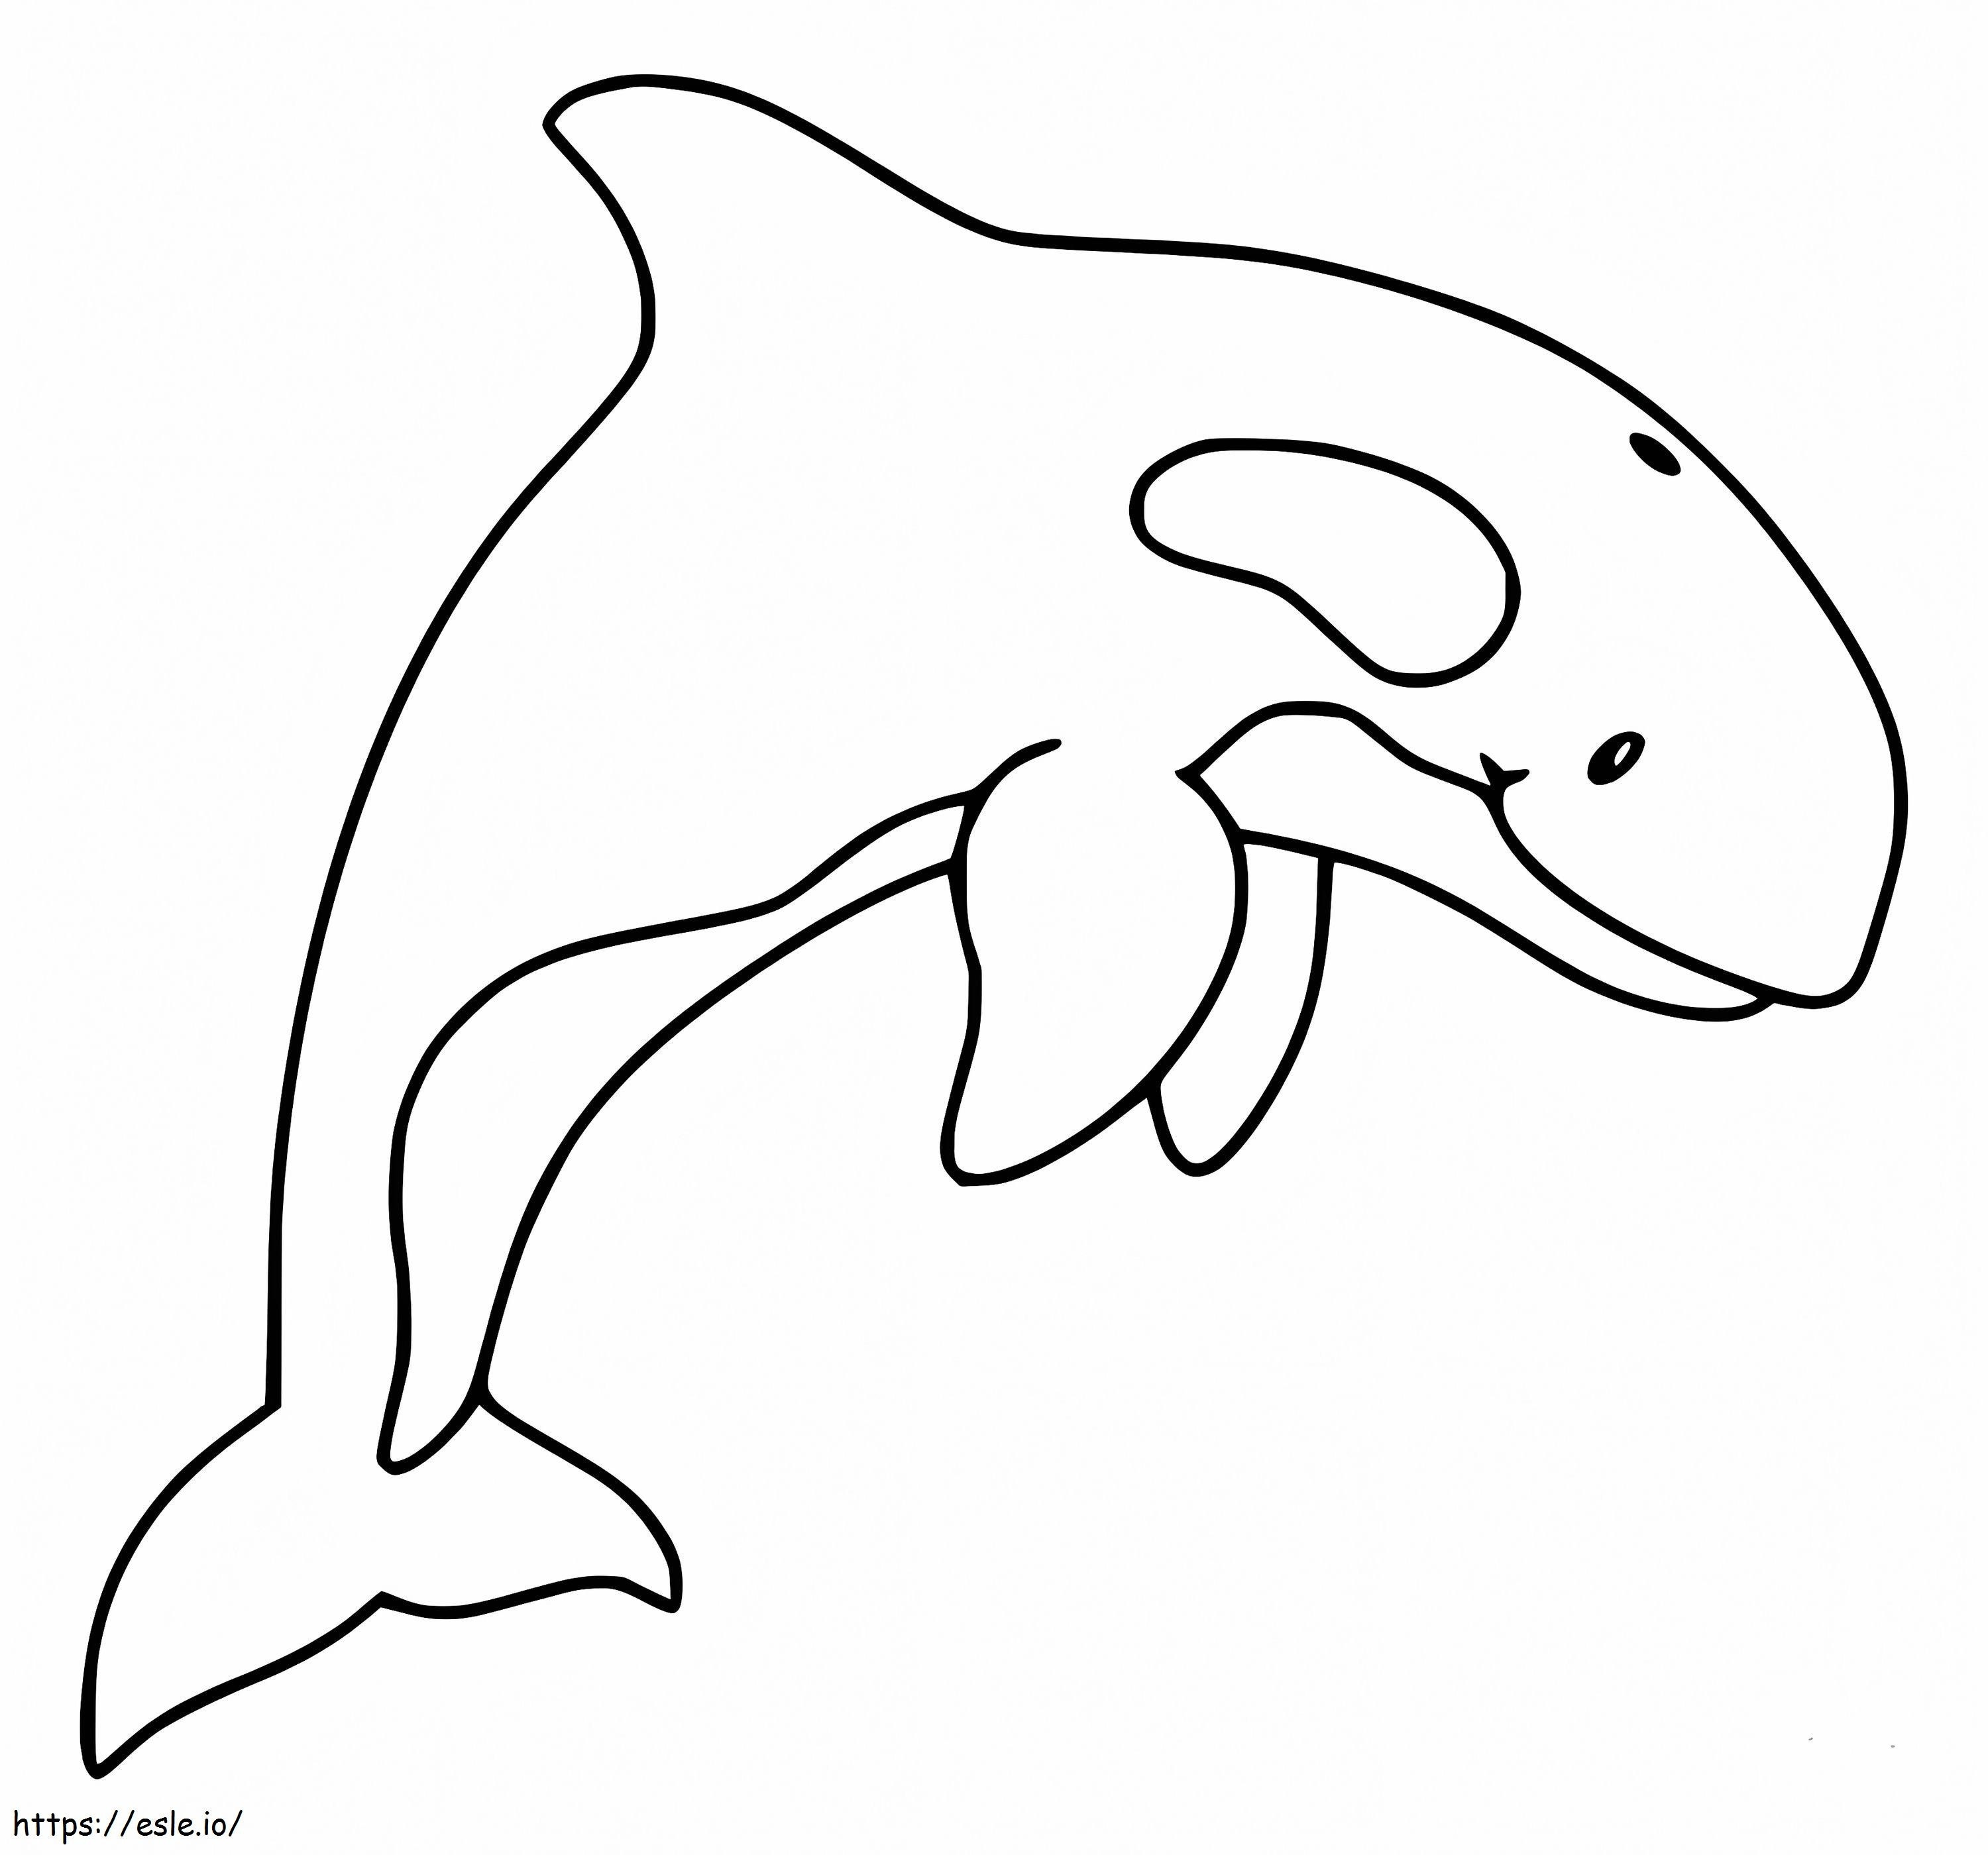 Paus Orca Gambar Mewarnai